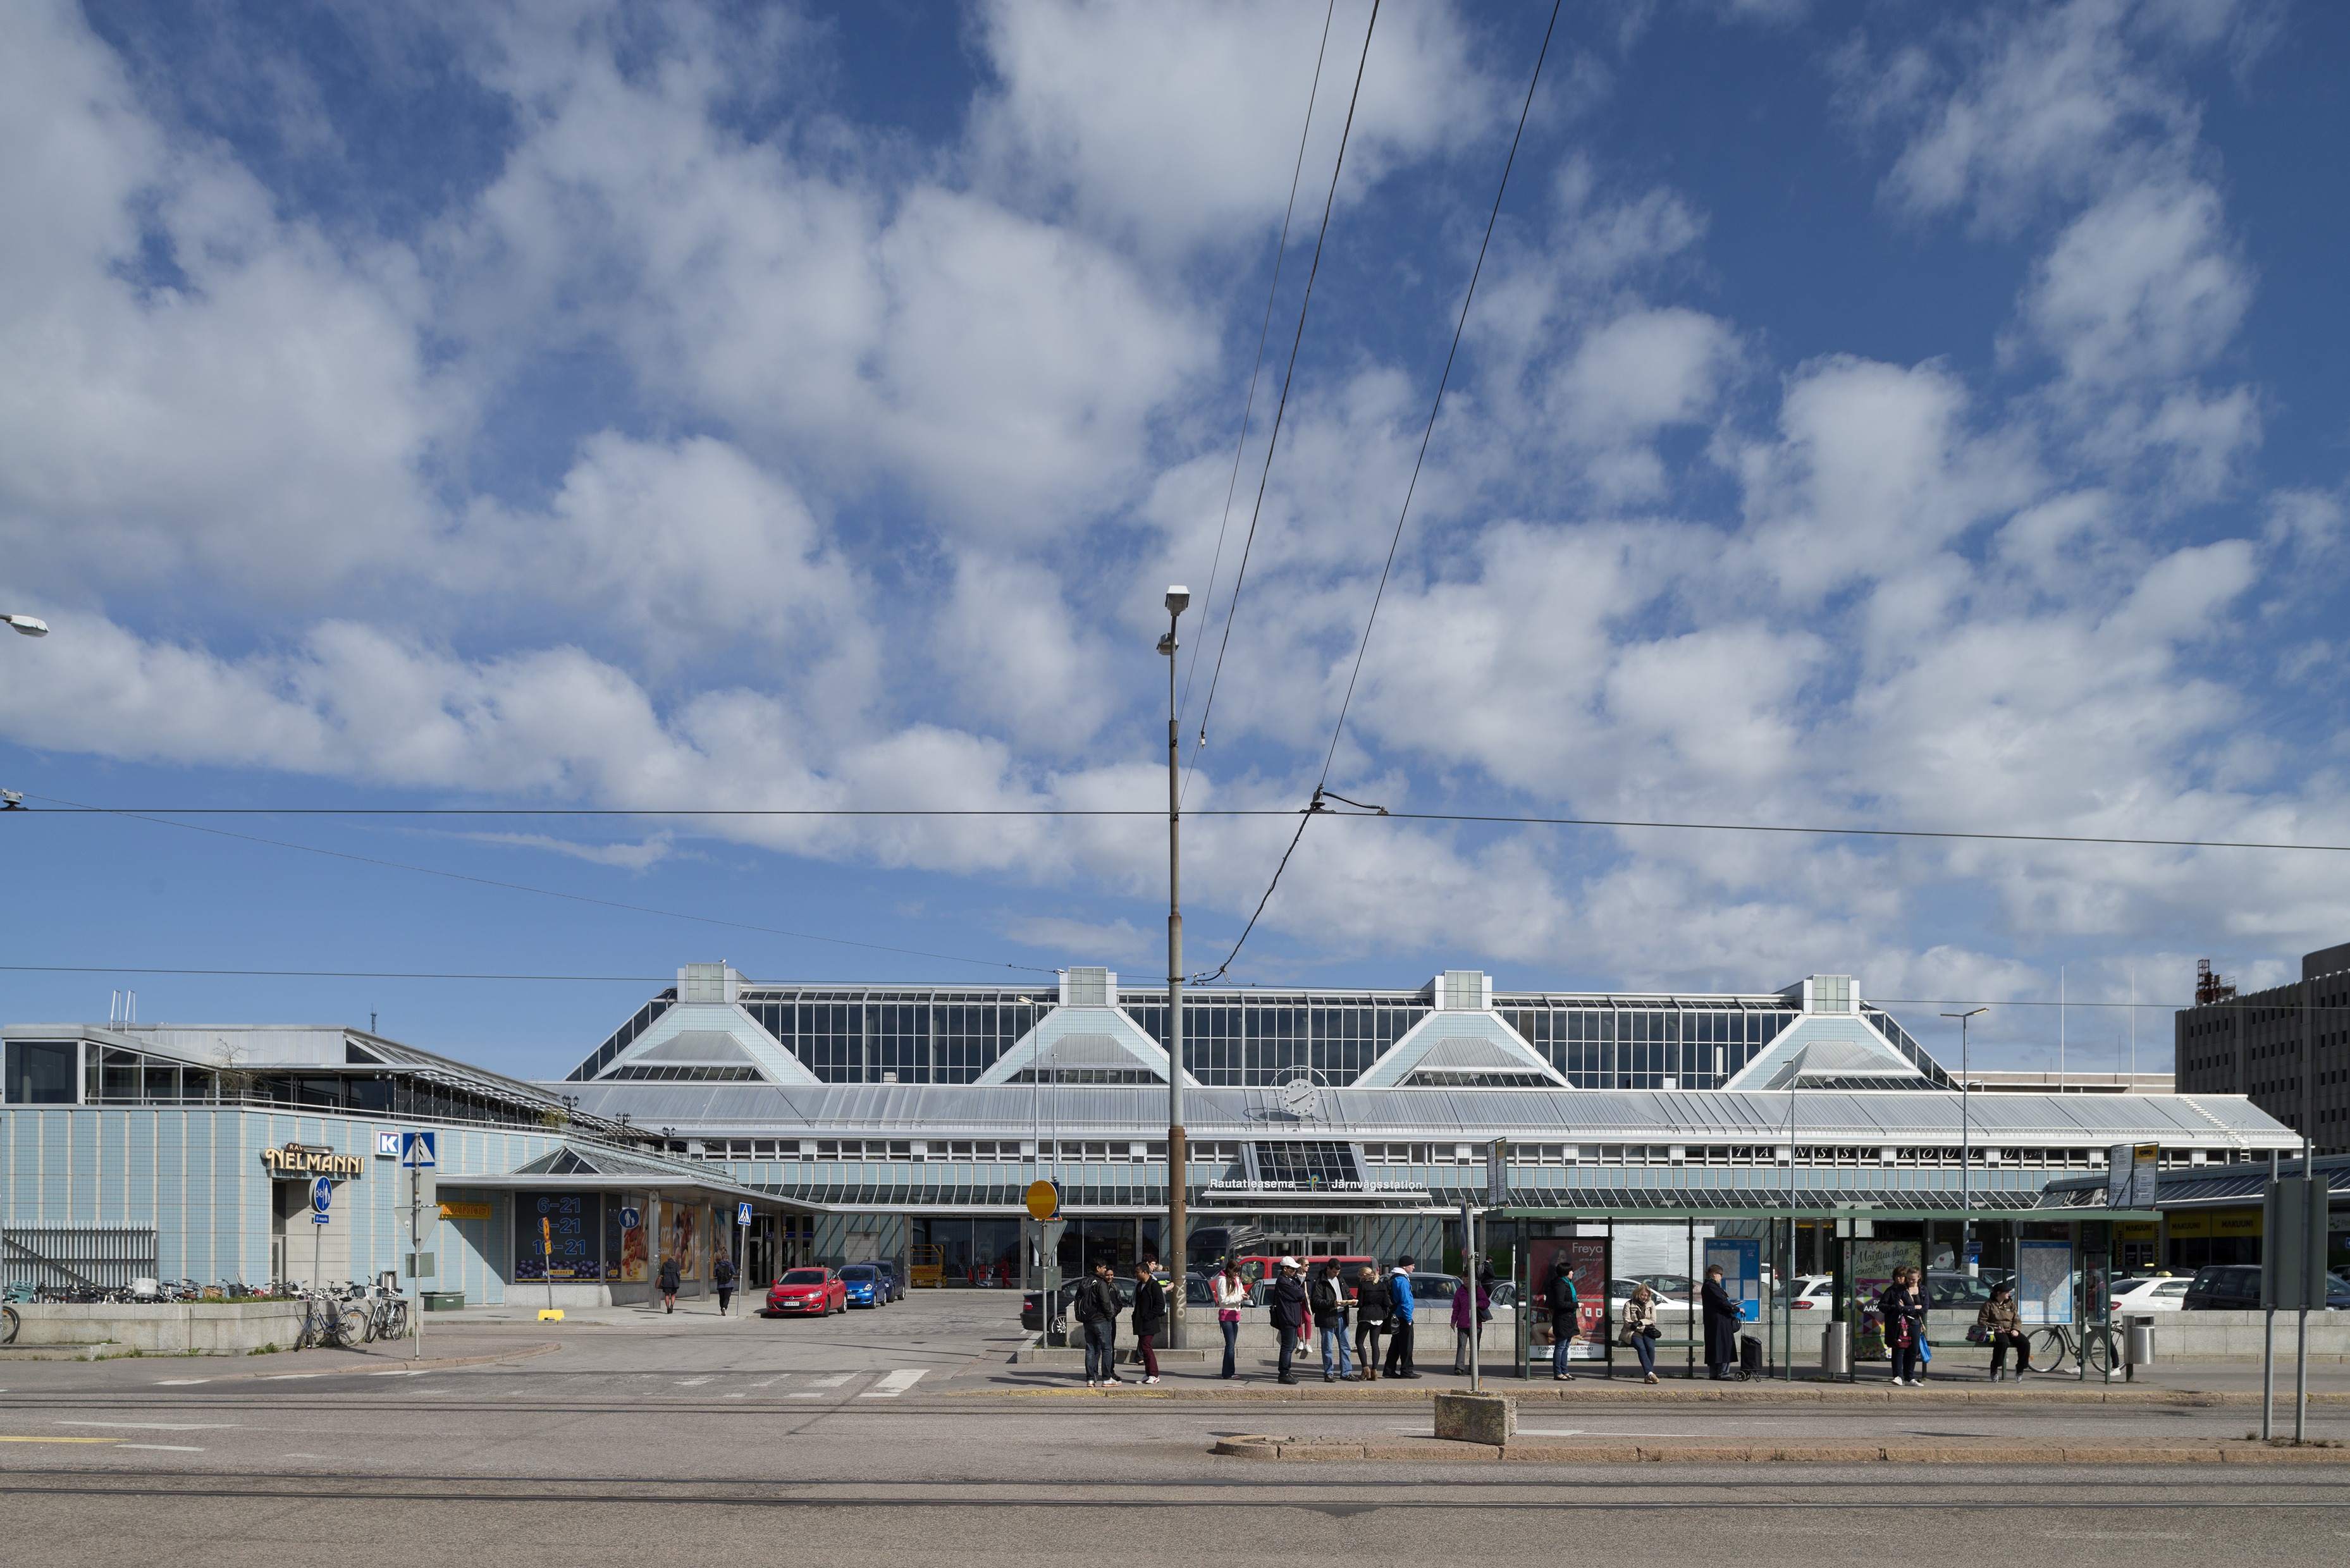 Pasilan rautatieasema Keski-Pasilassa. Arkkitehtitoimisto Jauhiainen - Nuuttila 1991. Teräsrakenteiset laiturikatokset muodostavat ilmavan, läpikuljettavan sillan ratapihan yli. Sininen, nauhamainen muuri osoittaa pääkerroksen tason. Kuvasuunta etelästä Asemapäällikönkadulta, etualalla bussipysäkki ja ihmisiä pysäkillä. Vasemmalla ravintola Nelmanni ja K-market.